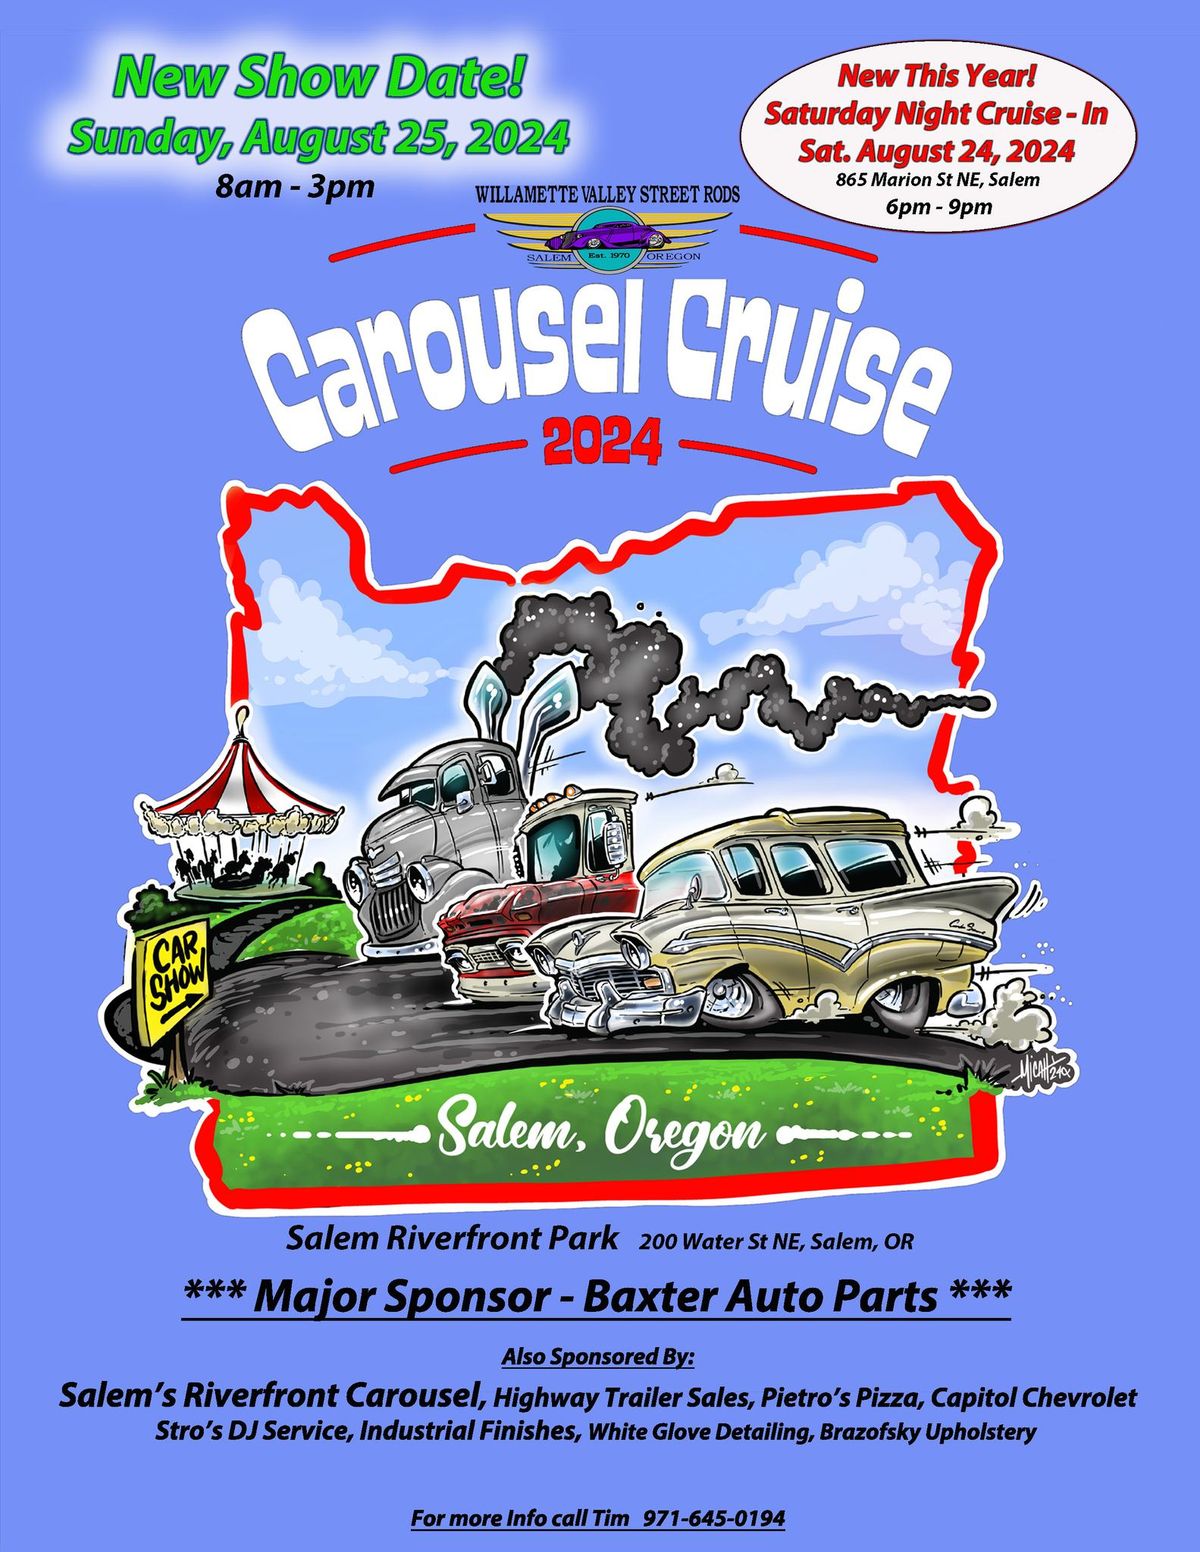 Carousel Cruise Car Show Sunday